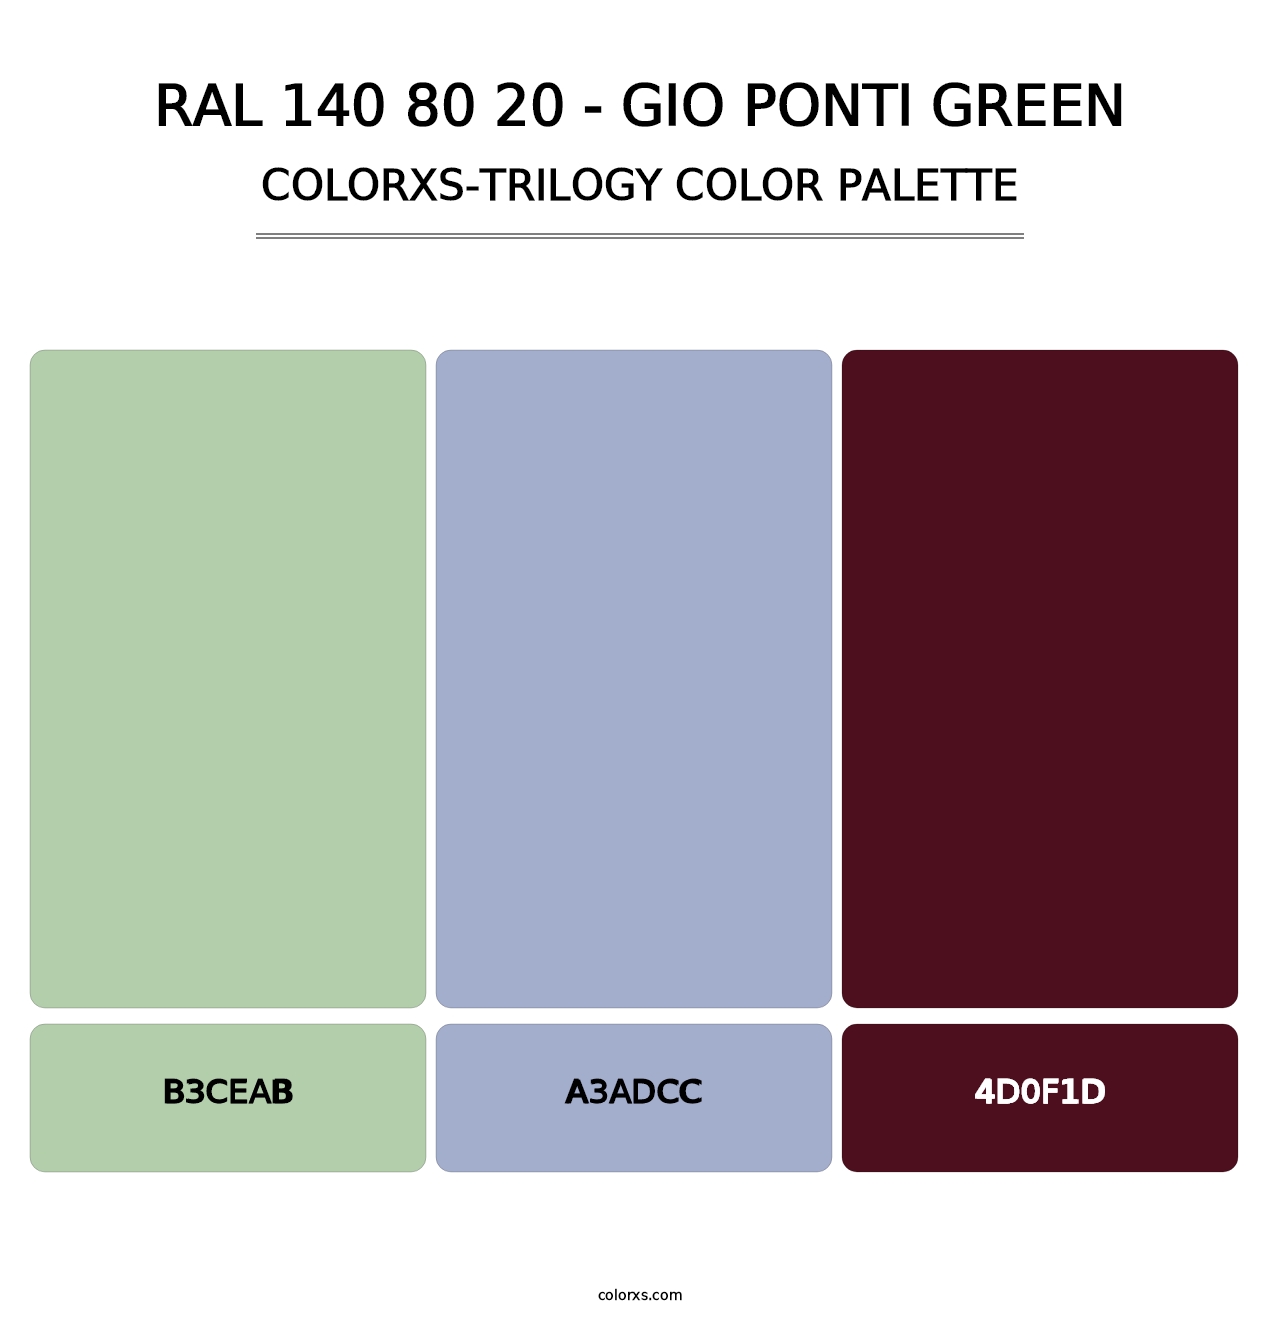 RAL 140 80 20 - Gio Ponti Green - Colorxs Trilogy Palette